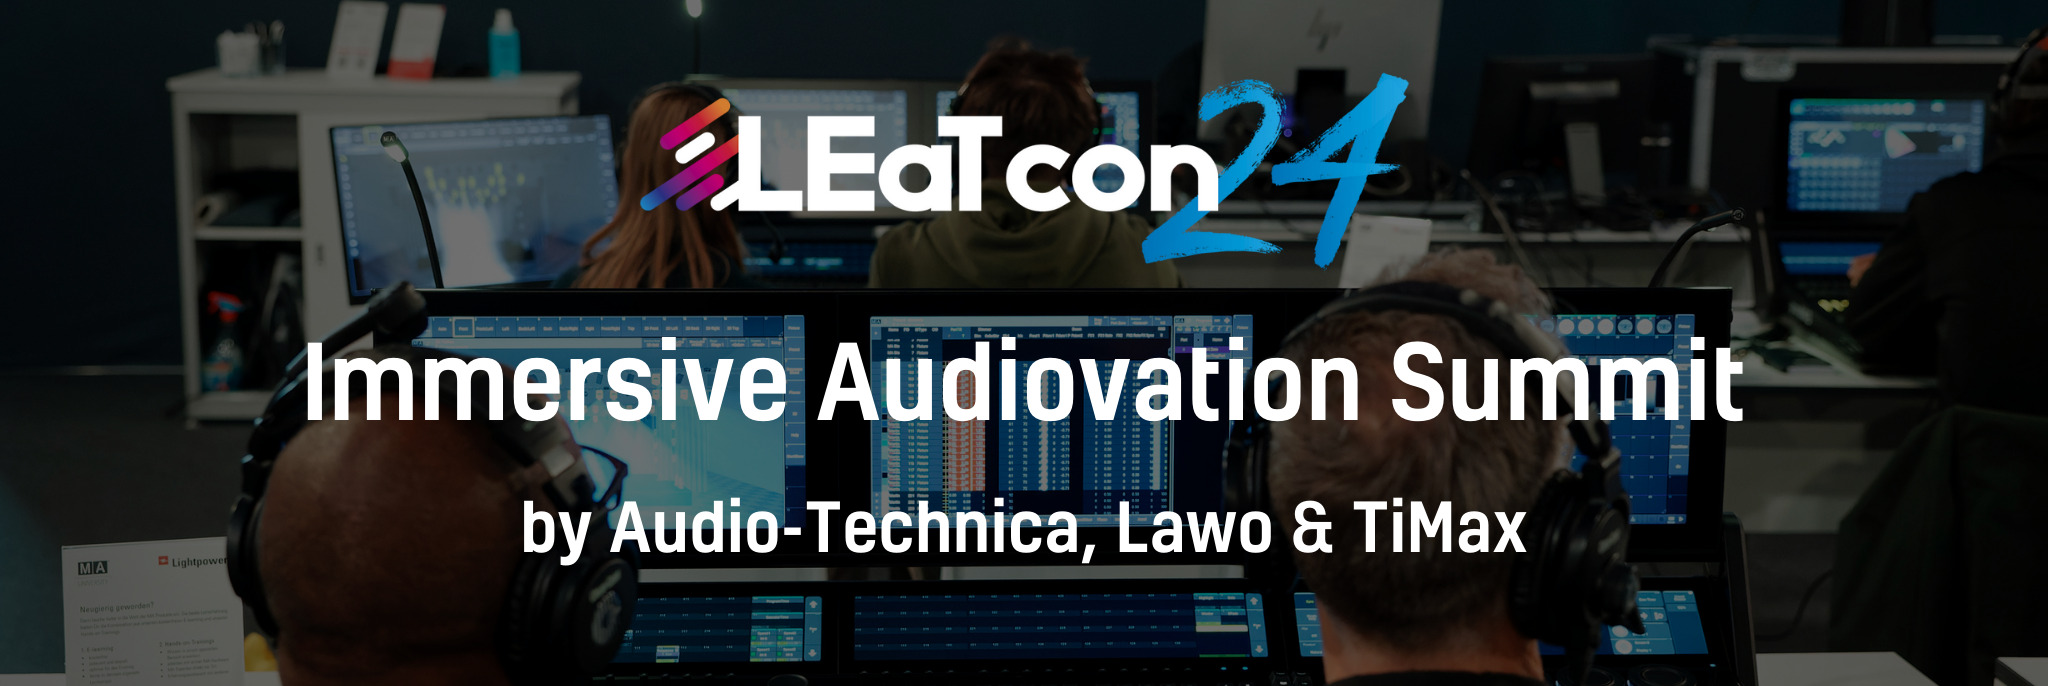 LEaT con 24 Immersive Audiovation Summit